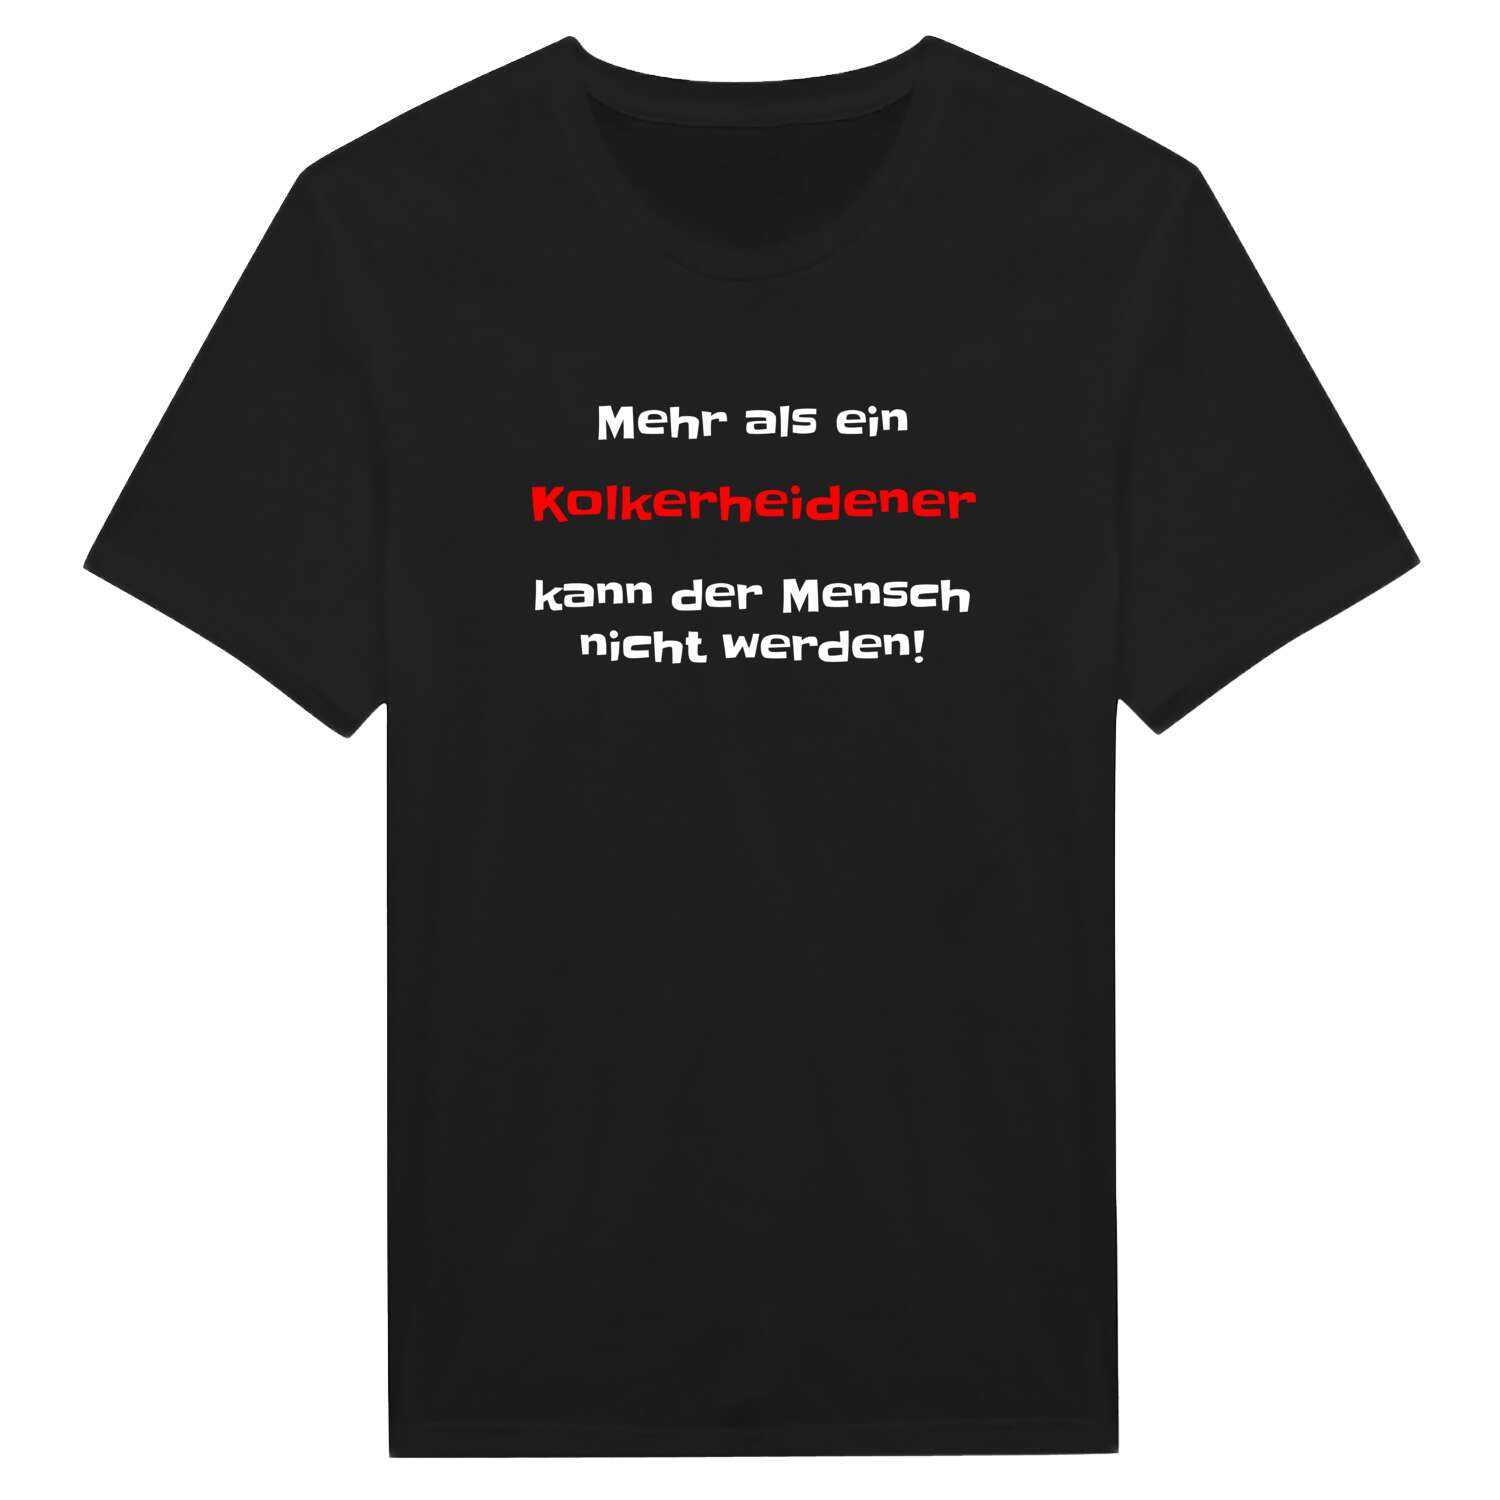 Kolkerheide T-Shirt »Mehr als ein«